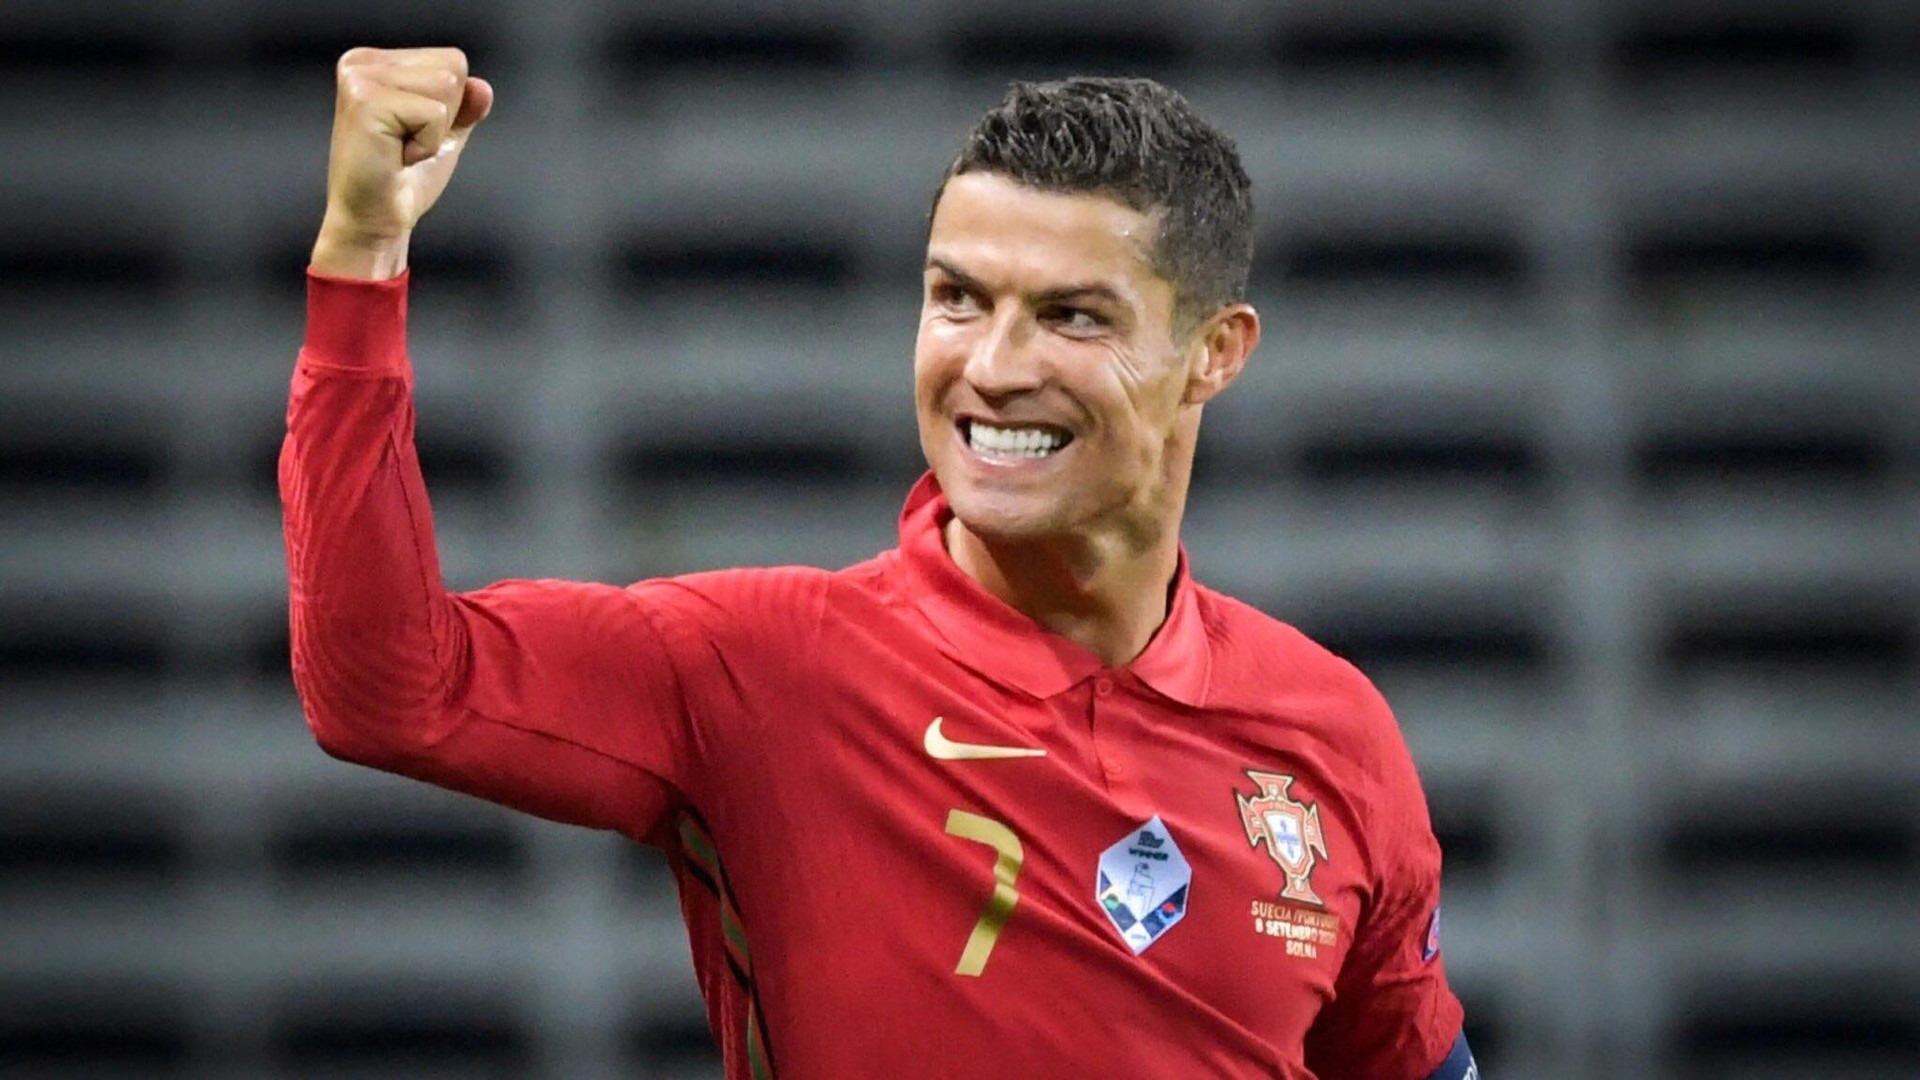 Ronaldo trở thành vận động viên được tìm kiếm nhiều nhất trên Google trong 25 năm qua - Ảnh: Getty